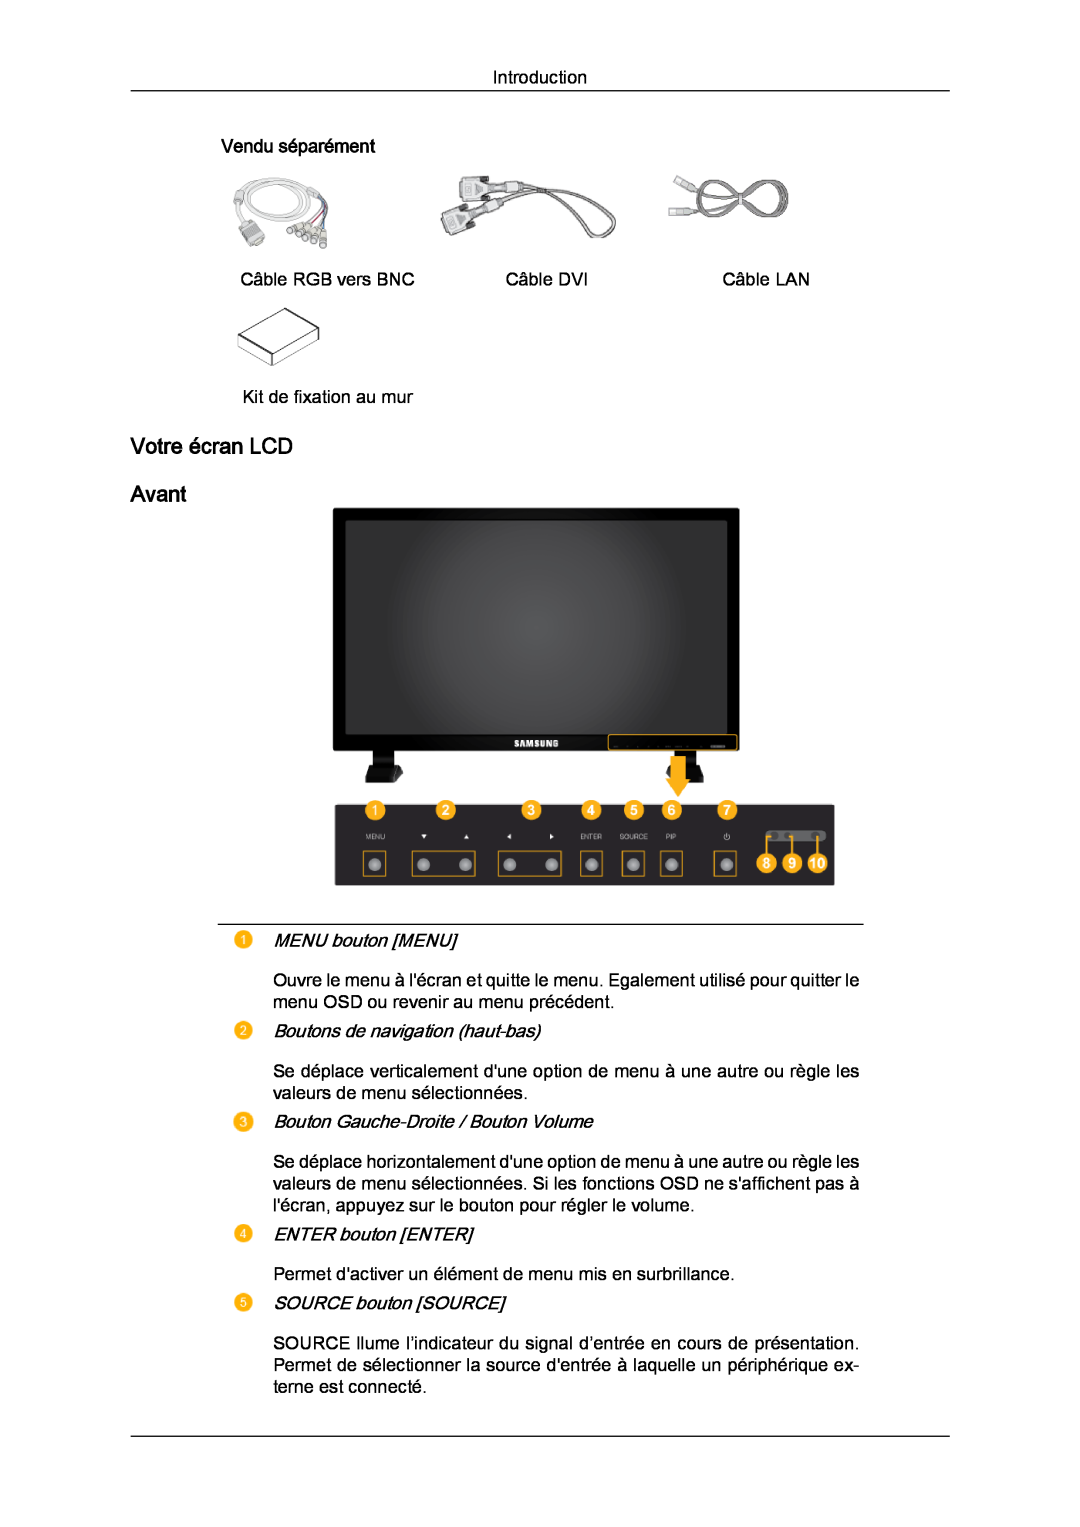 Samsung LH82TCUMBG/EN manual Votre écran LCD Avant, Vendu séparément, MENU bouton MENU, Boutons de navigation haut‐bas 